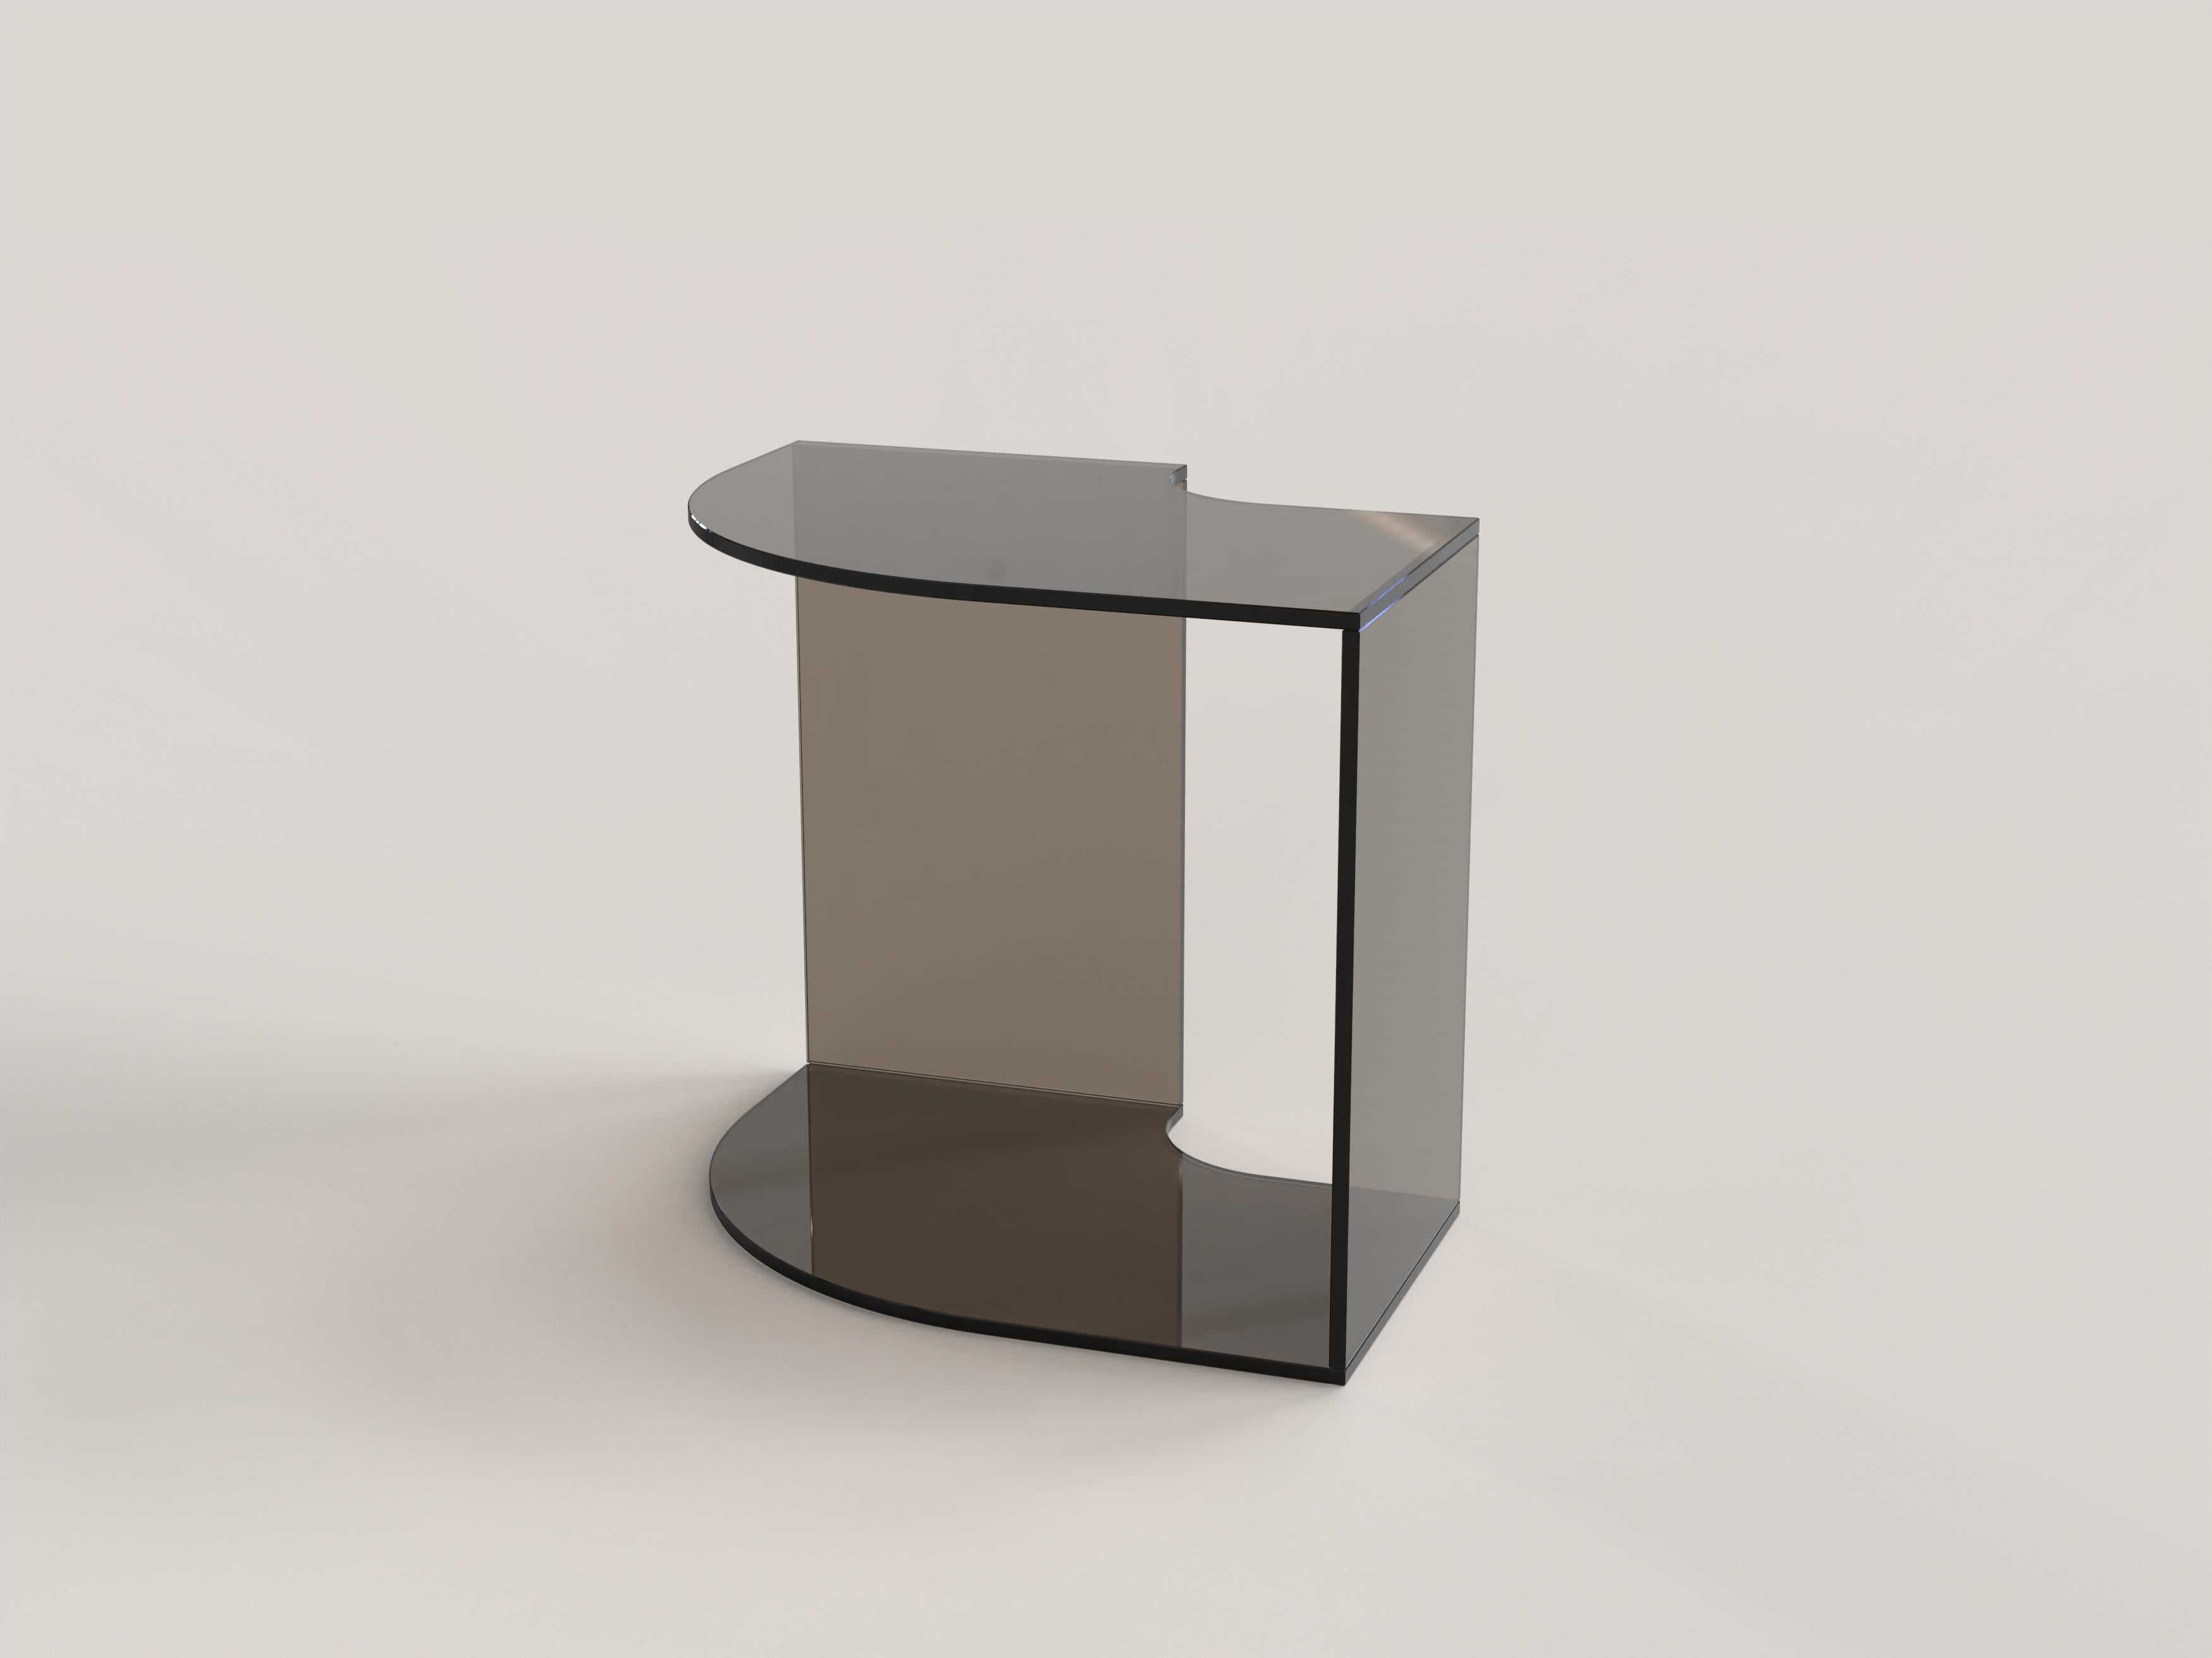 Contemporary Limited Edition Bronze Glass Table, Quarter V1 by Edizione Limitata For Sale 3